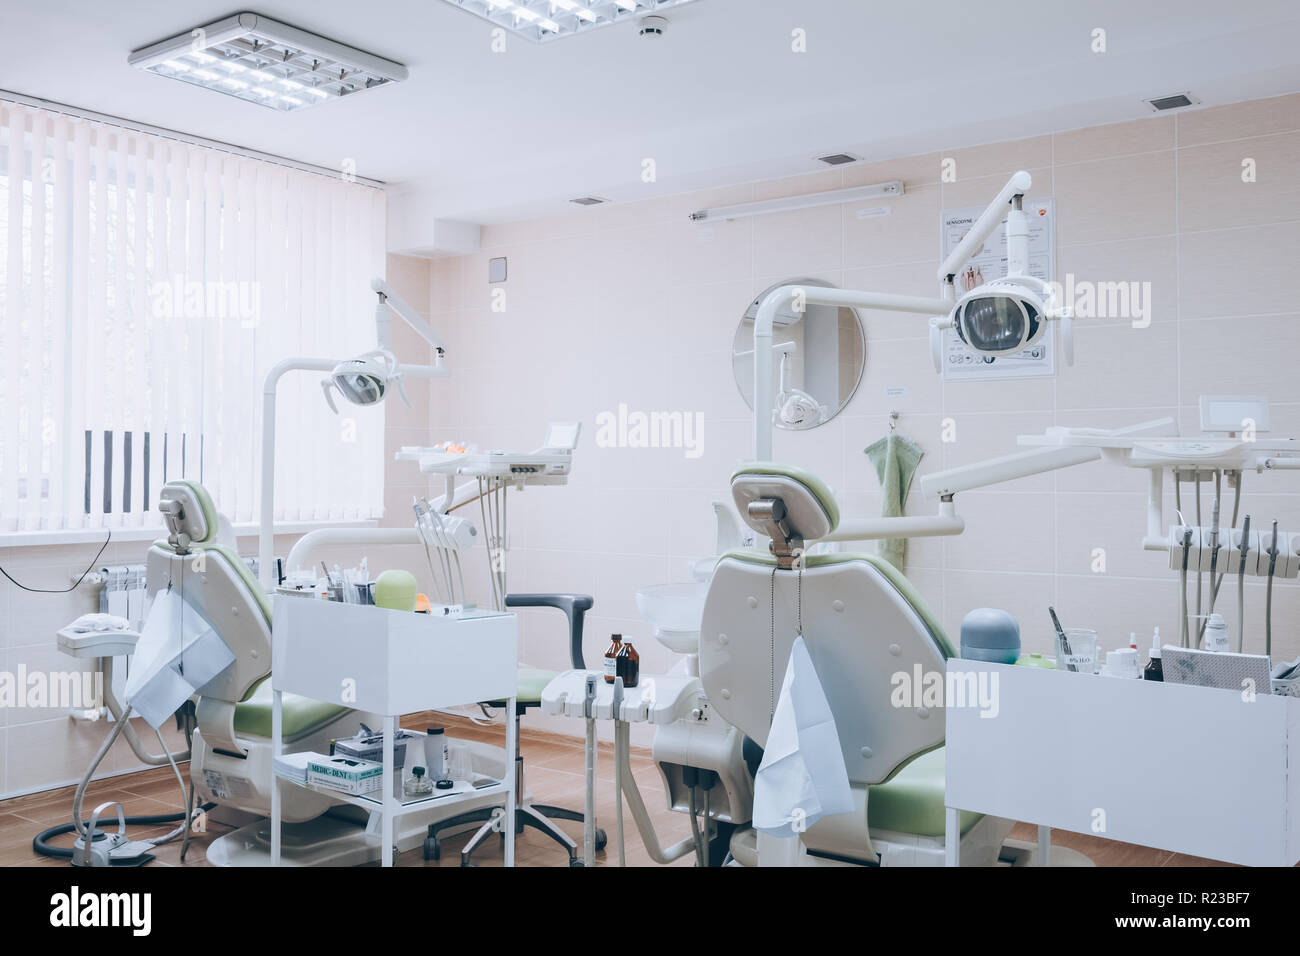 Zahnmedizinische Klinik interior design mit mehreren Zahnarztstuhl und Werkzeuge. Moderne Zahnarztpraxis Büro mit grünen Stühlen. Zahnarztpraxis. Weißer Ton. Stockfoto